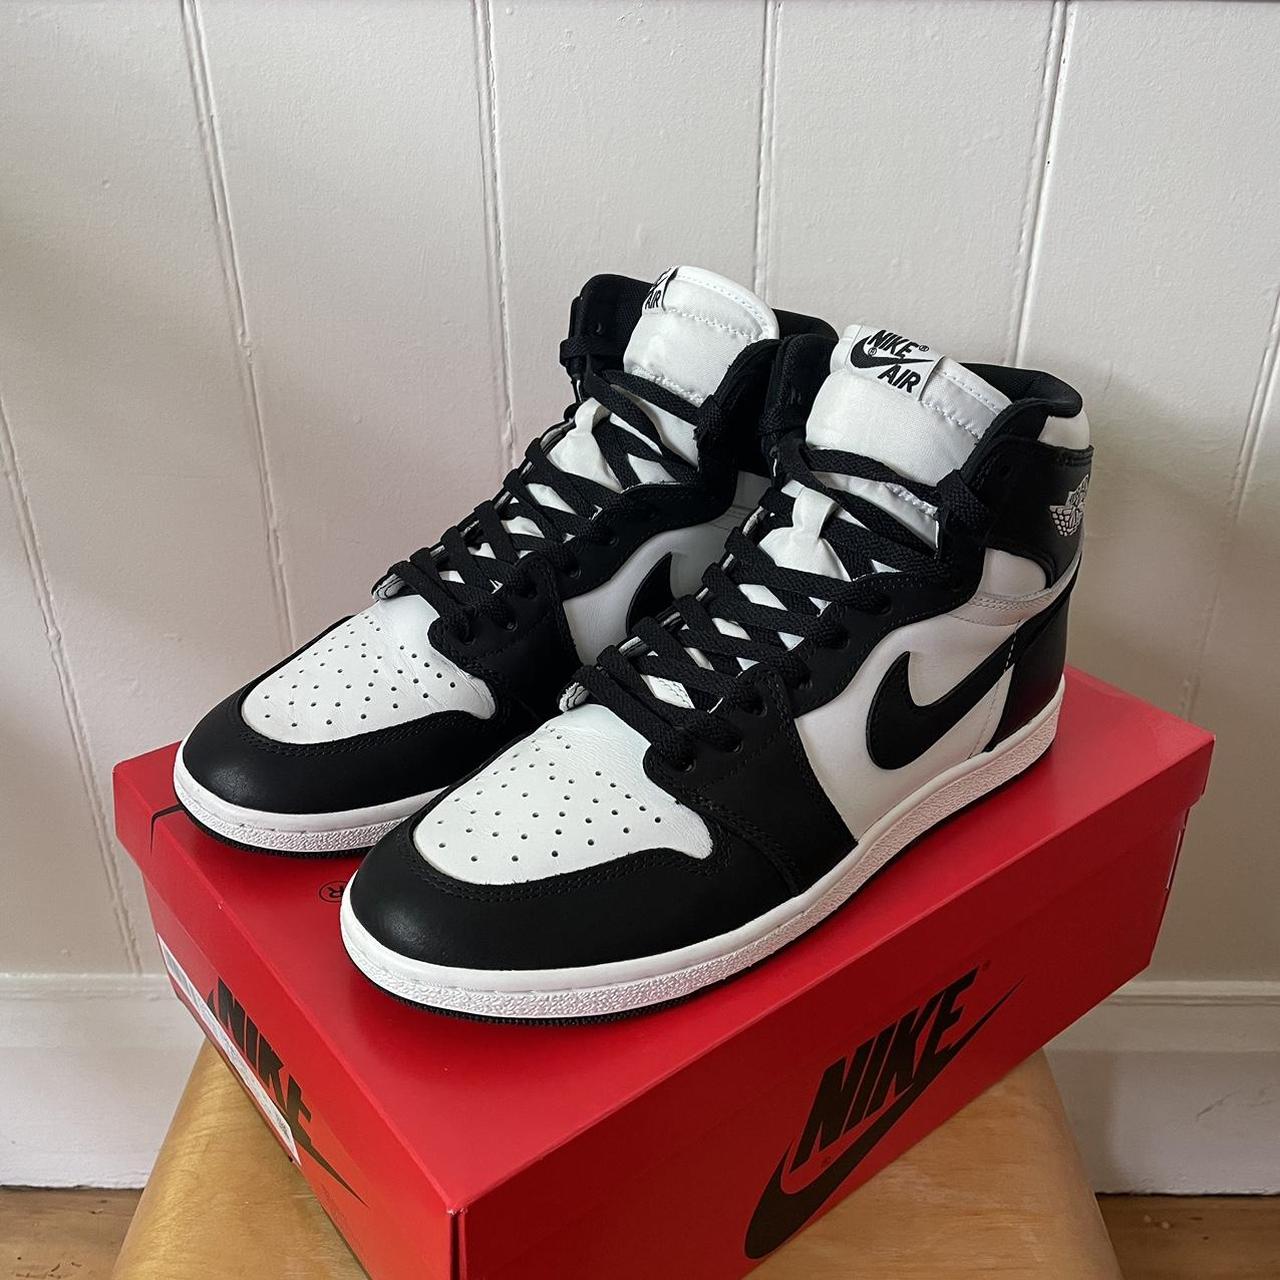 Nike Air Jordan 1 High ‘85 Black/White, US11.5, Worn...